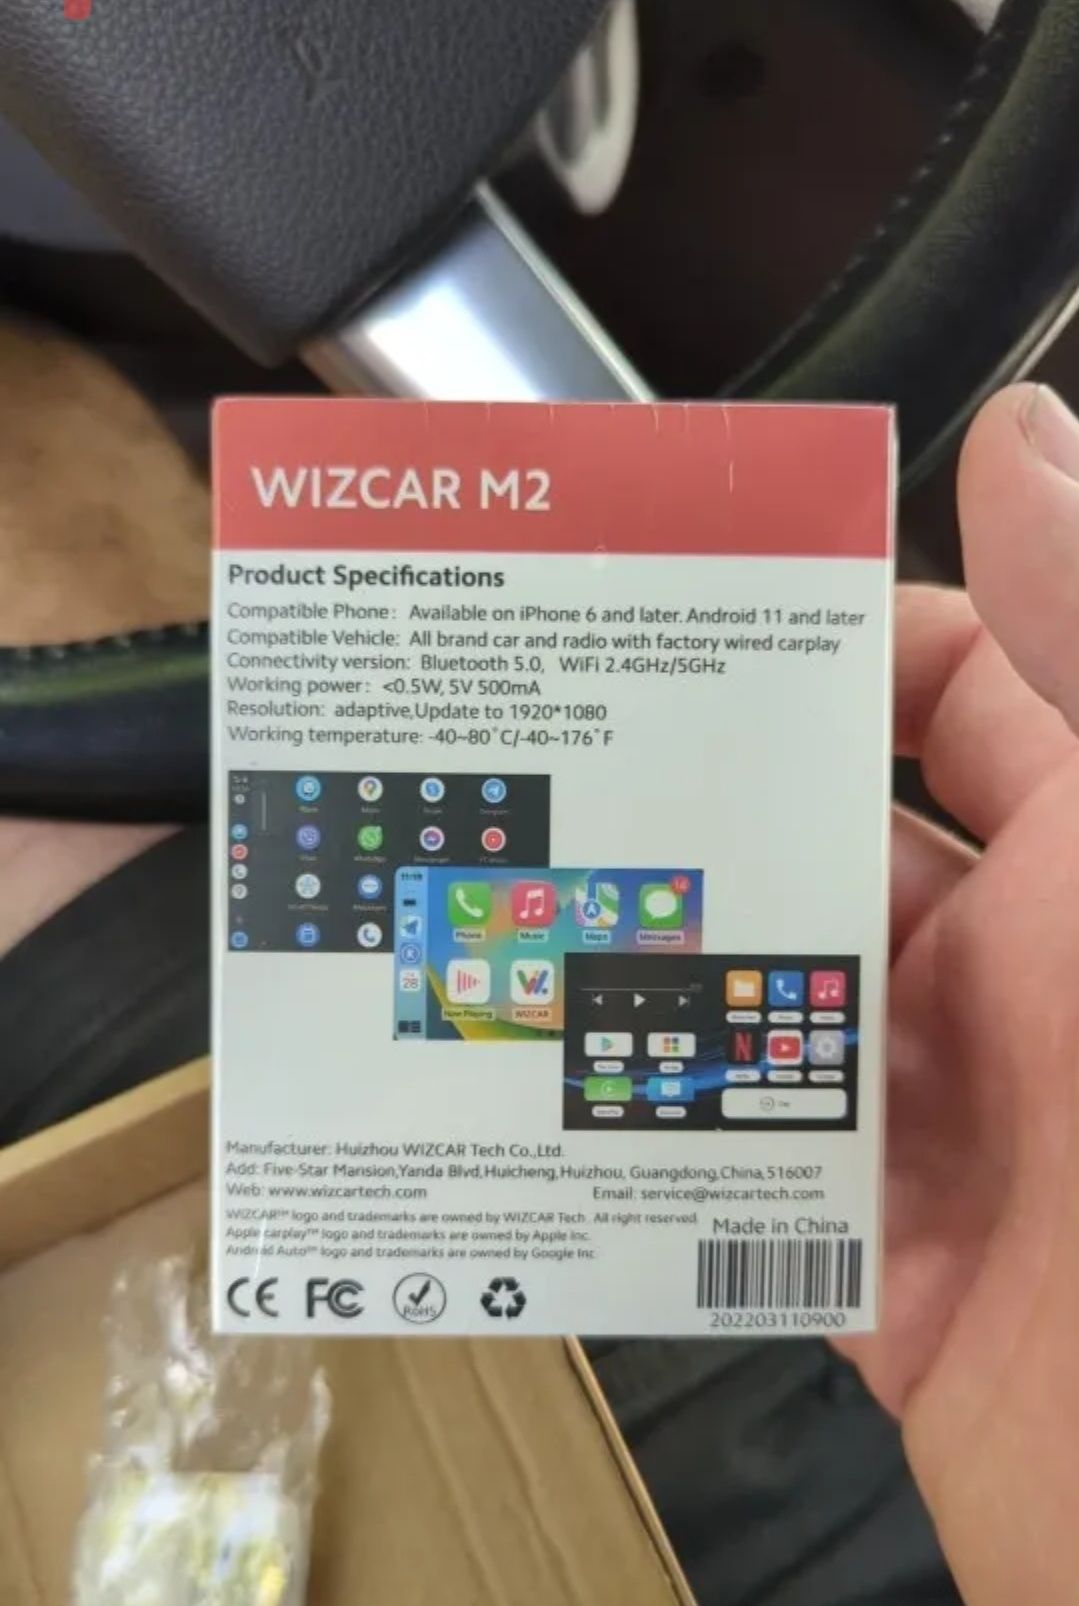 Wizcar M2 Android Auto для VW iD.3 iD.4 iD.6 E-Bora E-Lavida